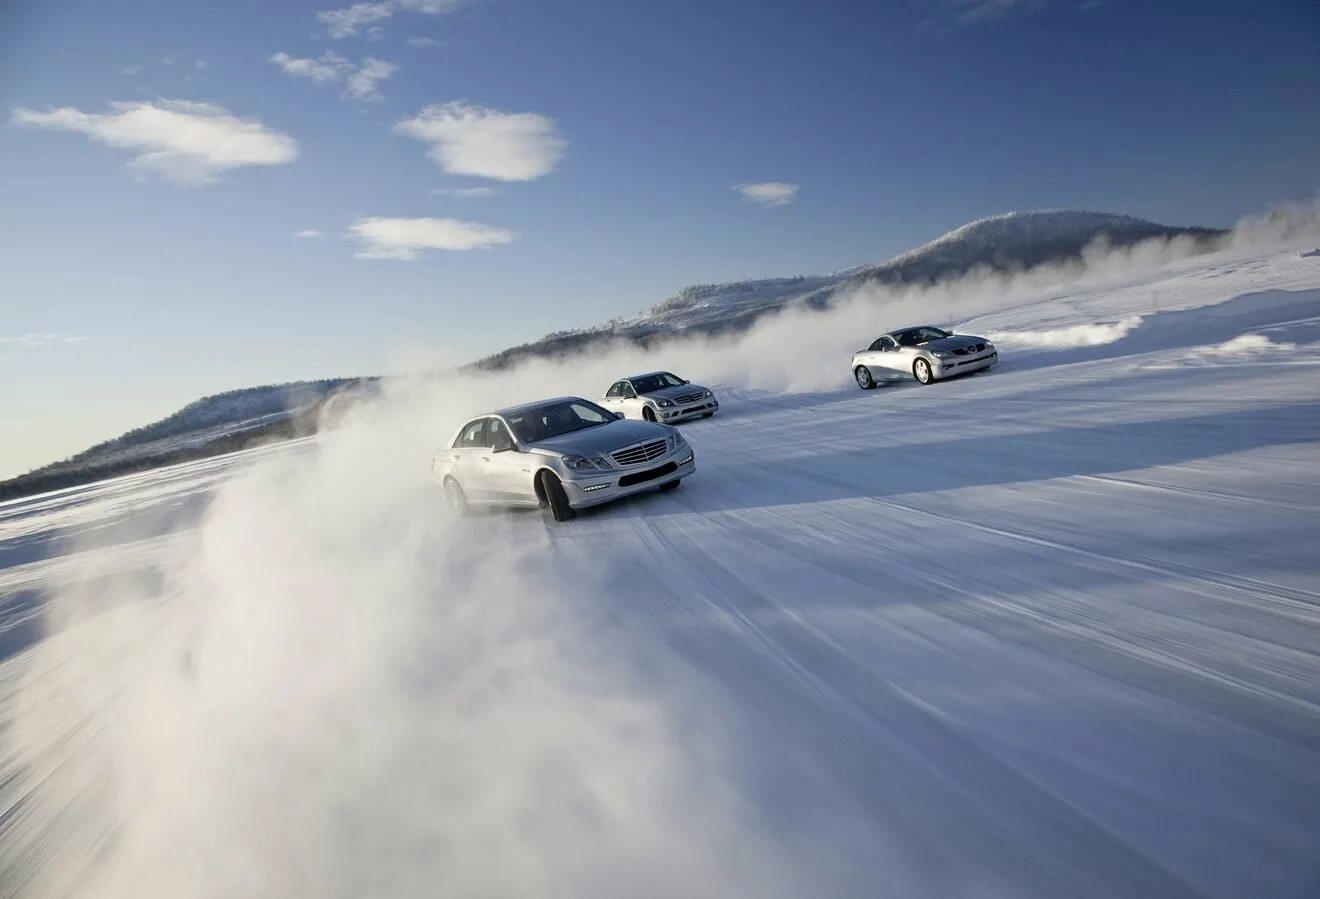 Машина катится на скорости. Машина зимой. Зимний дрифт. Машина в заносе зимой. Машину заносит.